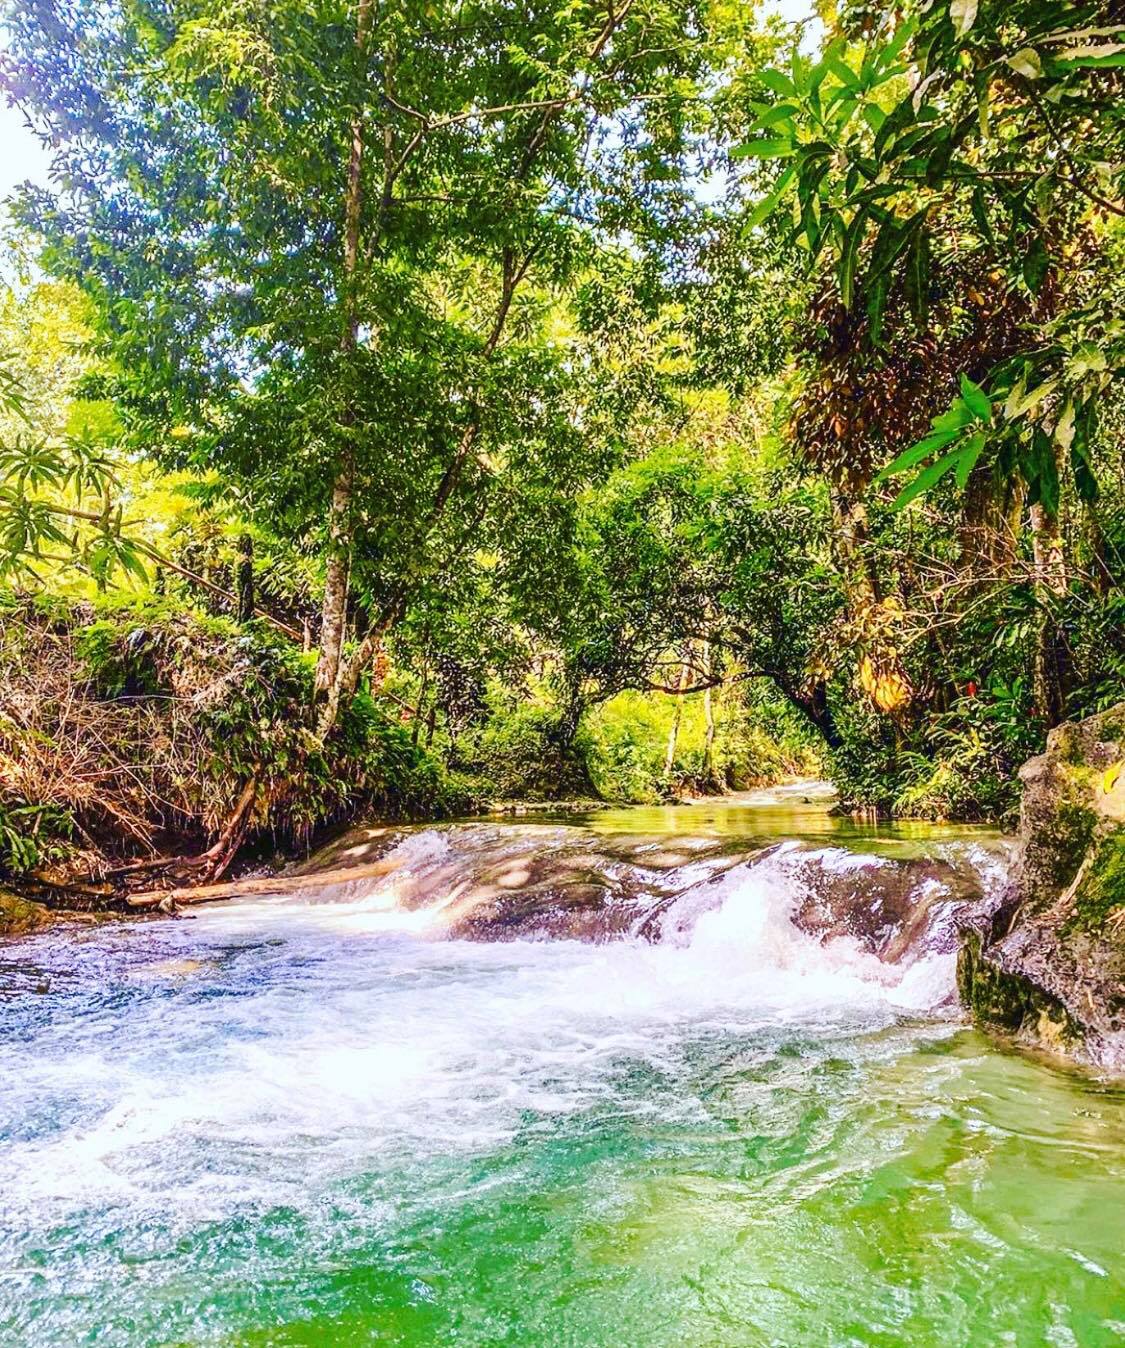 Best Popular Waterfalls in Jamaica